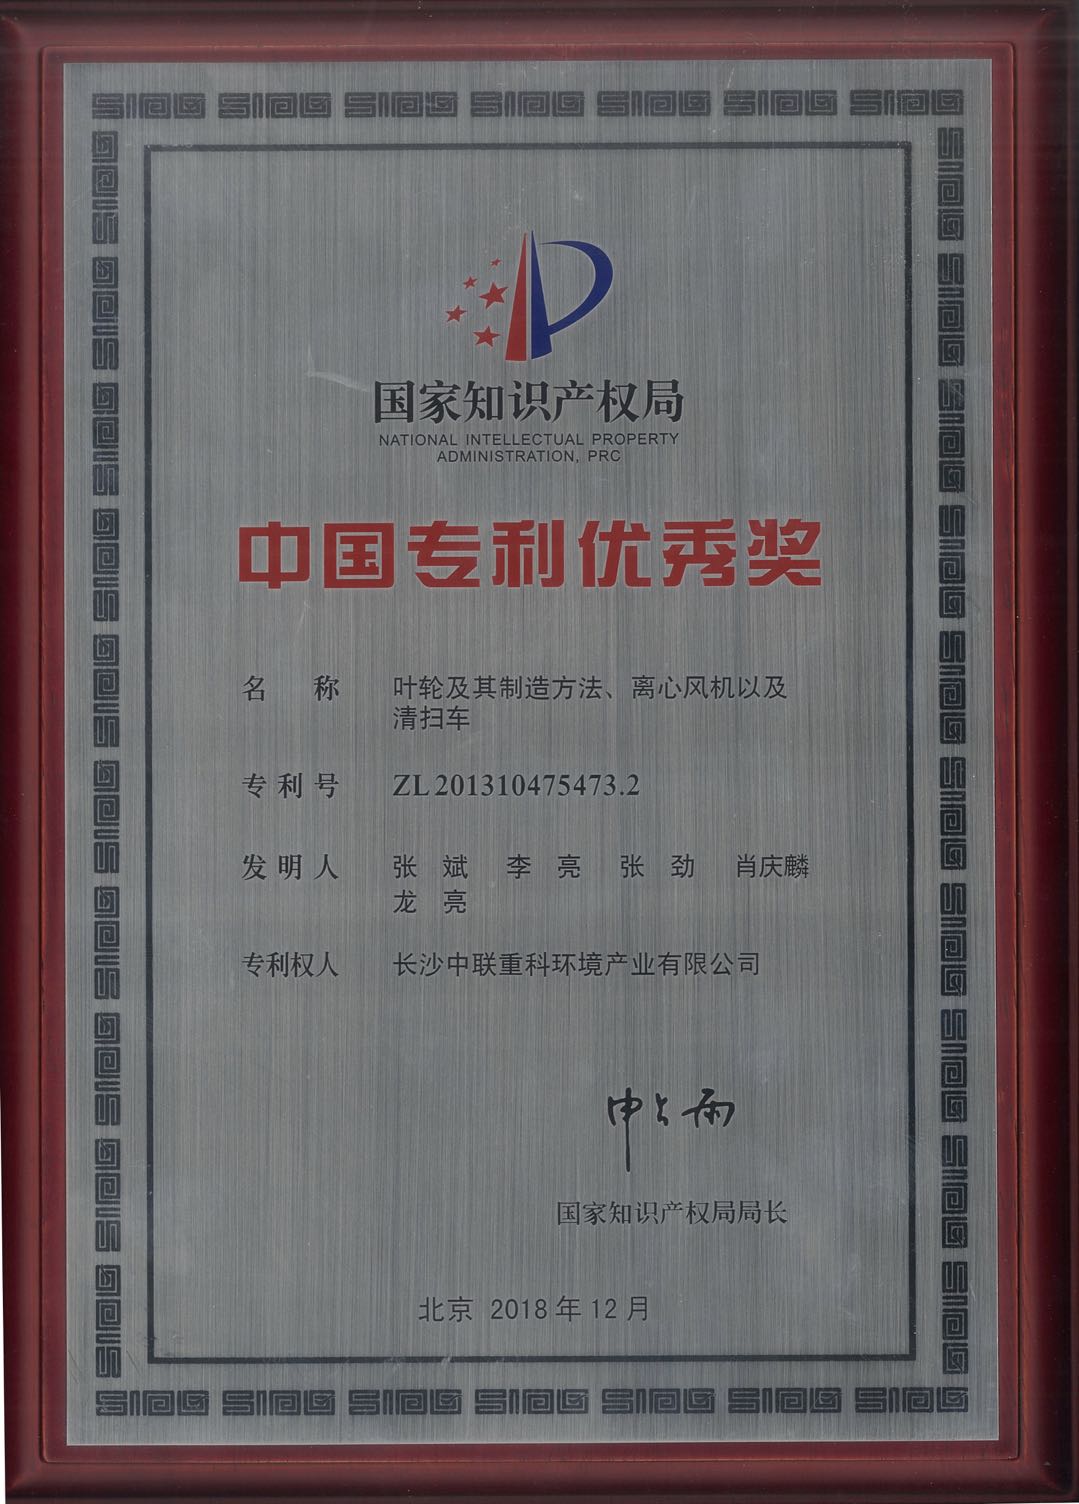 中联环境环卫装备关键技术专利荣获中国专利优秀奖